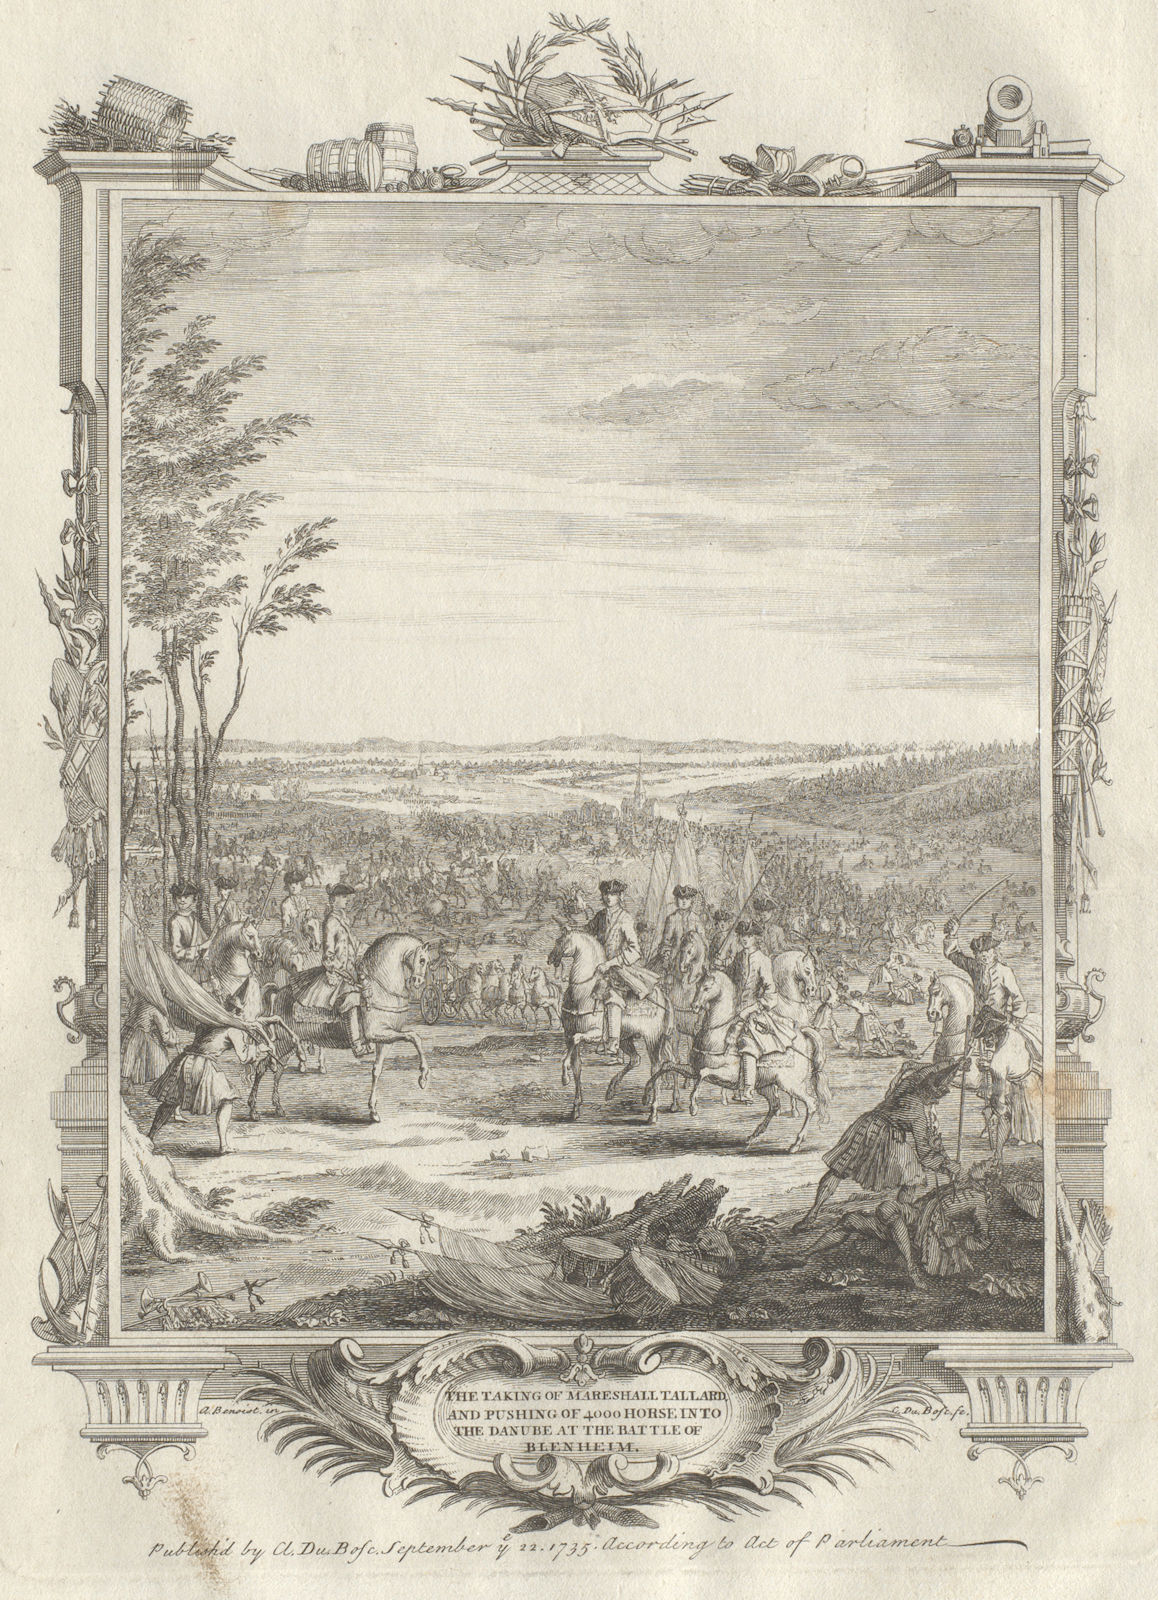 Battle of Blenheim/Höchstädt 1704. Tallard's capture. 4000 horsemen drowned 1736